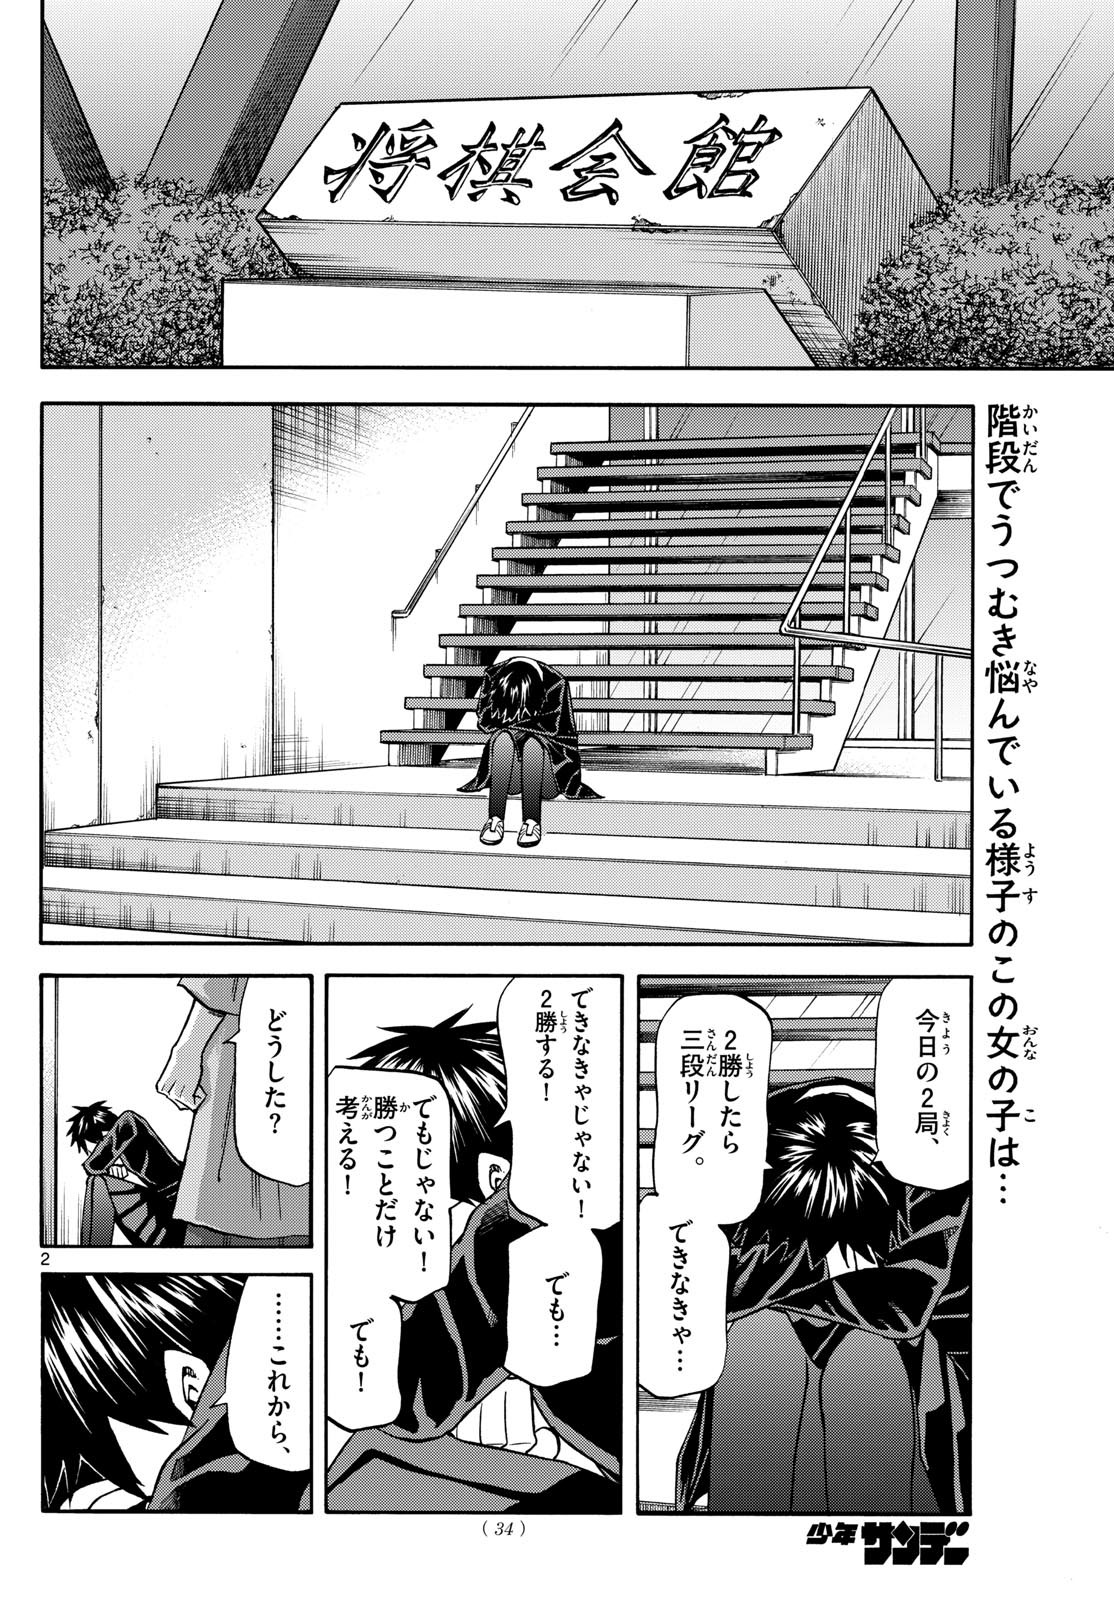 Ryu-to-Ichigo - Chapter 181 - Page 2